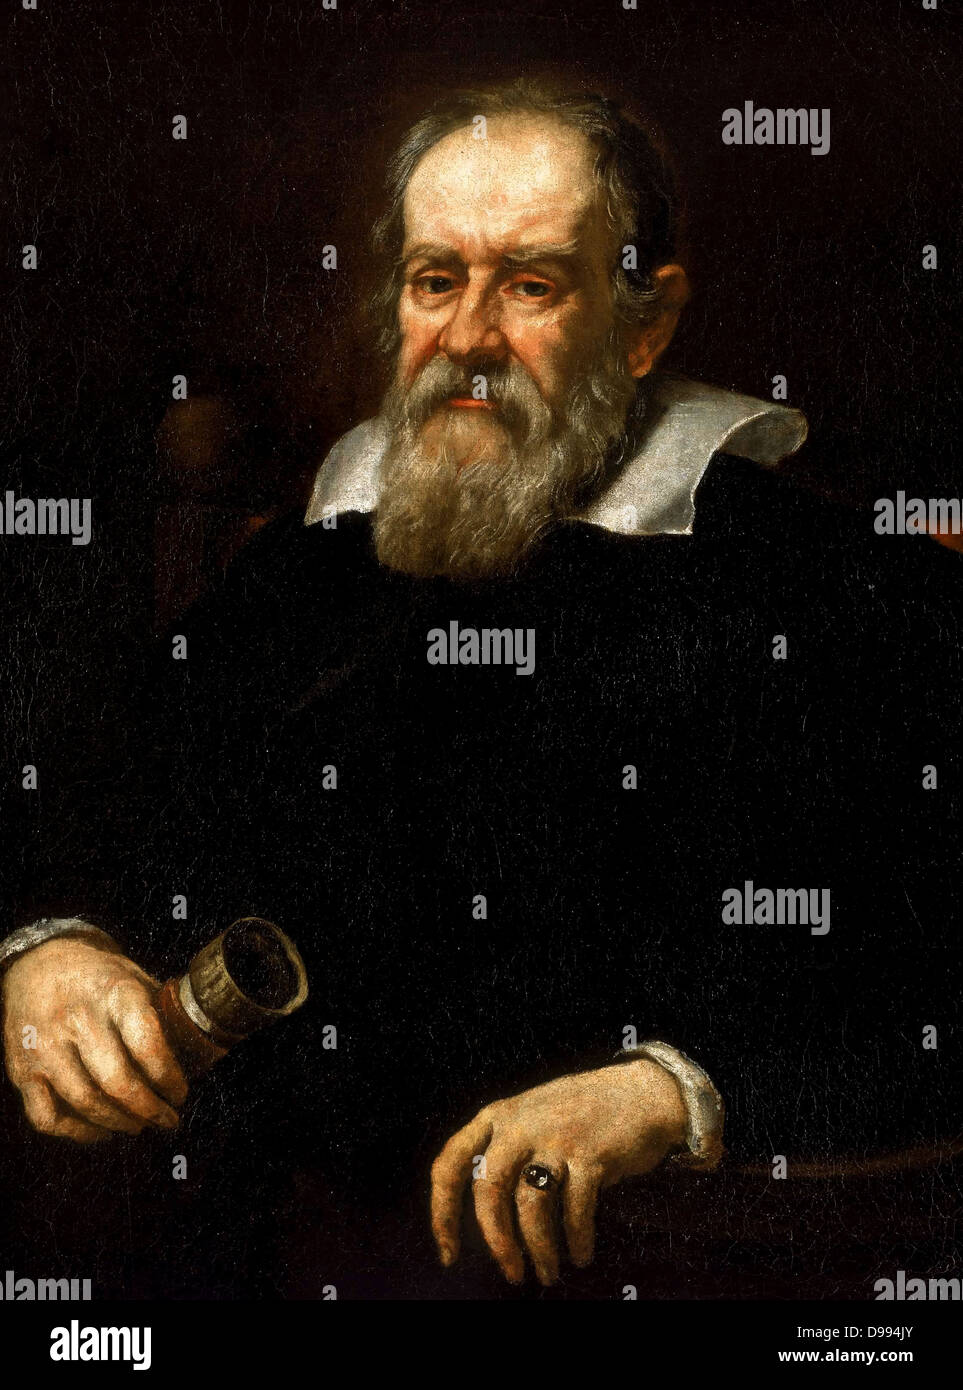 Galileo Galilei (prononciation italienne : 15 février 1564 - 8 janvier 1642), le physicien italien, mathématicien, astronome, qui a joué un rôle majeur dans la révolution scientifique. Ses réalisations incluent des améliorations de l'optique et les observations astronomiques. Banque D'Images